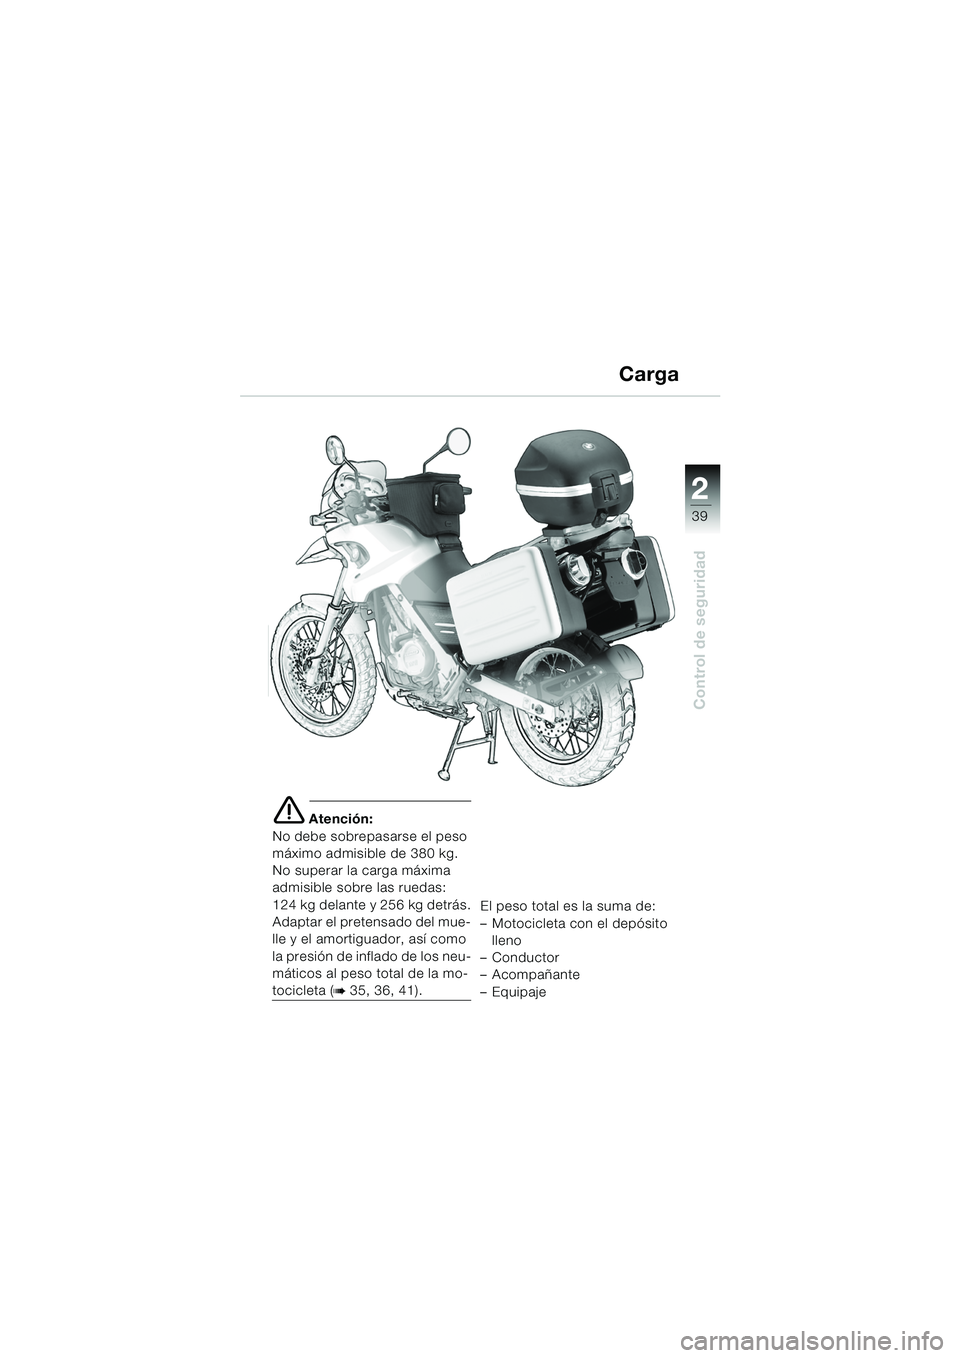 BMW MOTORRAD F 650 GS DAKAR 2003  Manual de instrucciones (in Spanish) 1
39
Control de seguridad
2
e Atención:
No debe sobrepasarse el peso 
máximo admisible de 380 kg.
No superar la carga máxima
admisible sobre las ruedas:
124 kg delante y 256 kg detrás.
Adaptar el 